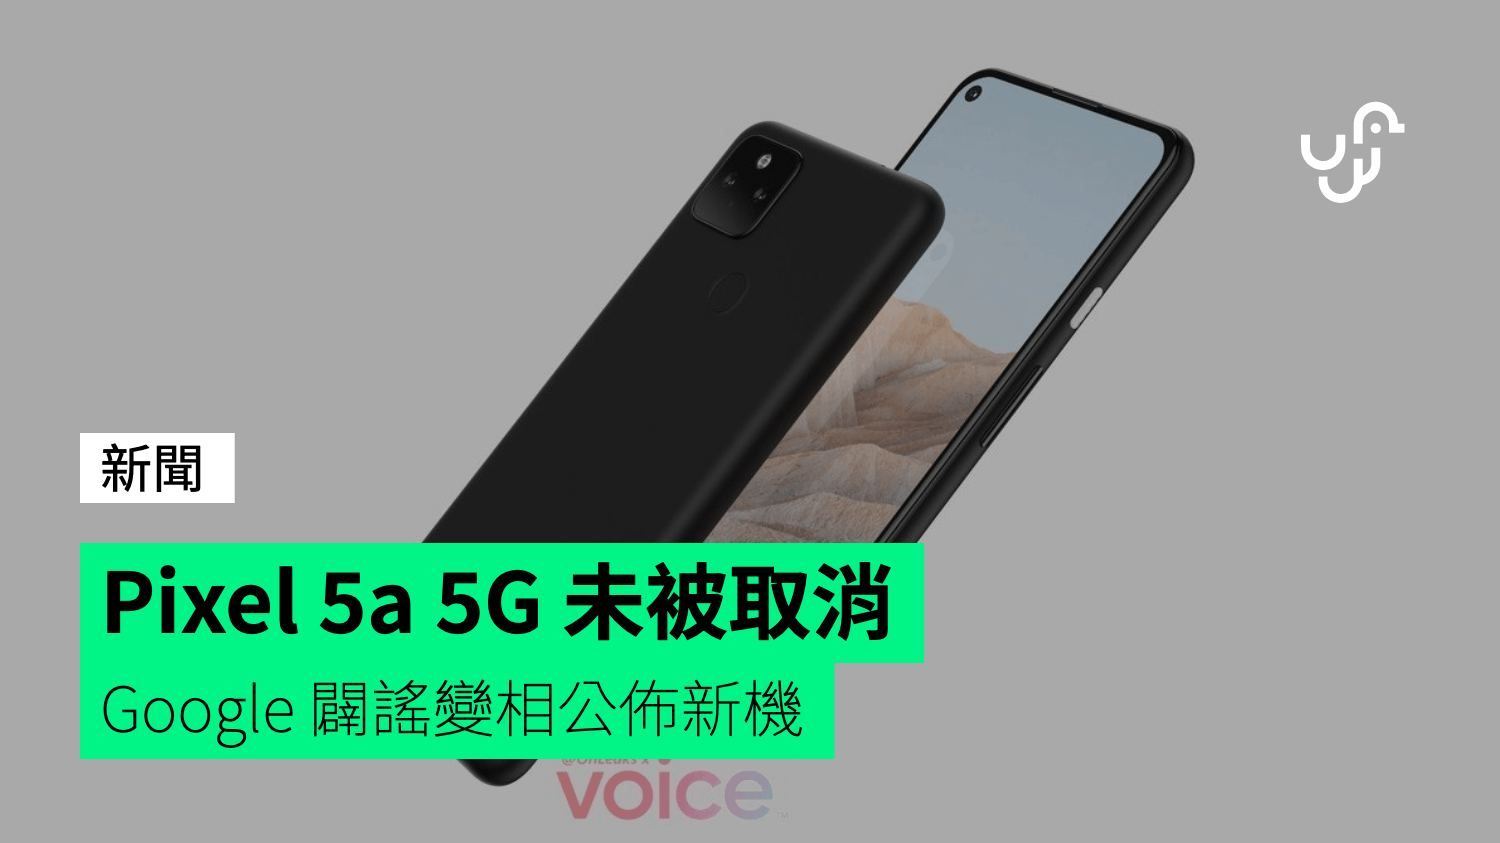 Pixel 5a 5G 未被取消 Google 闢謠變相公佈新機 - 香港 unwire.hk